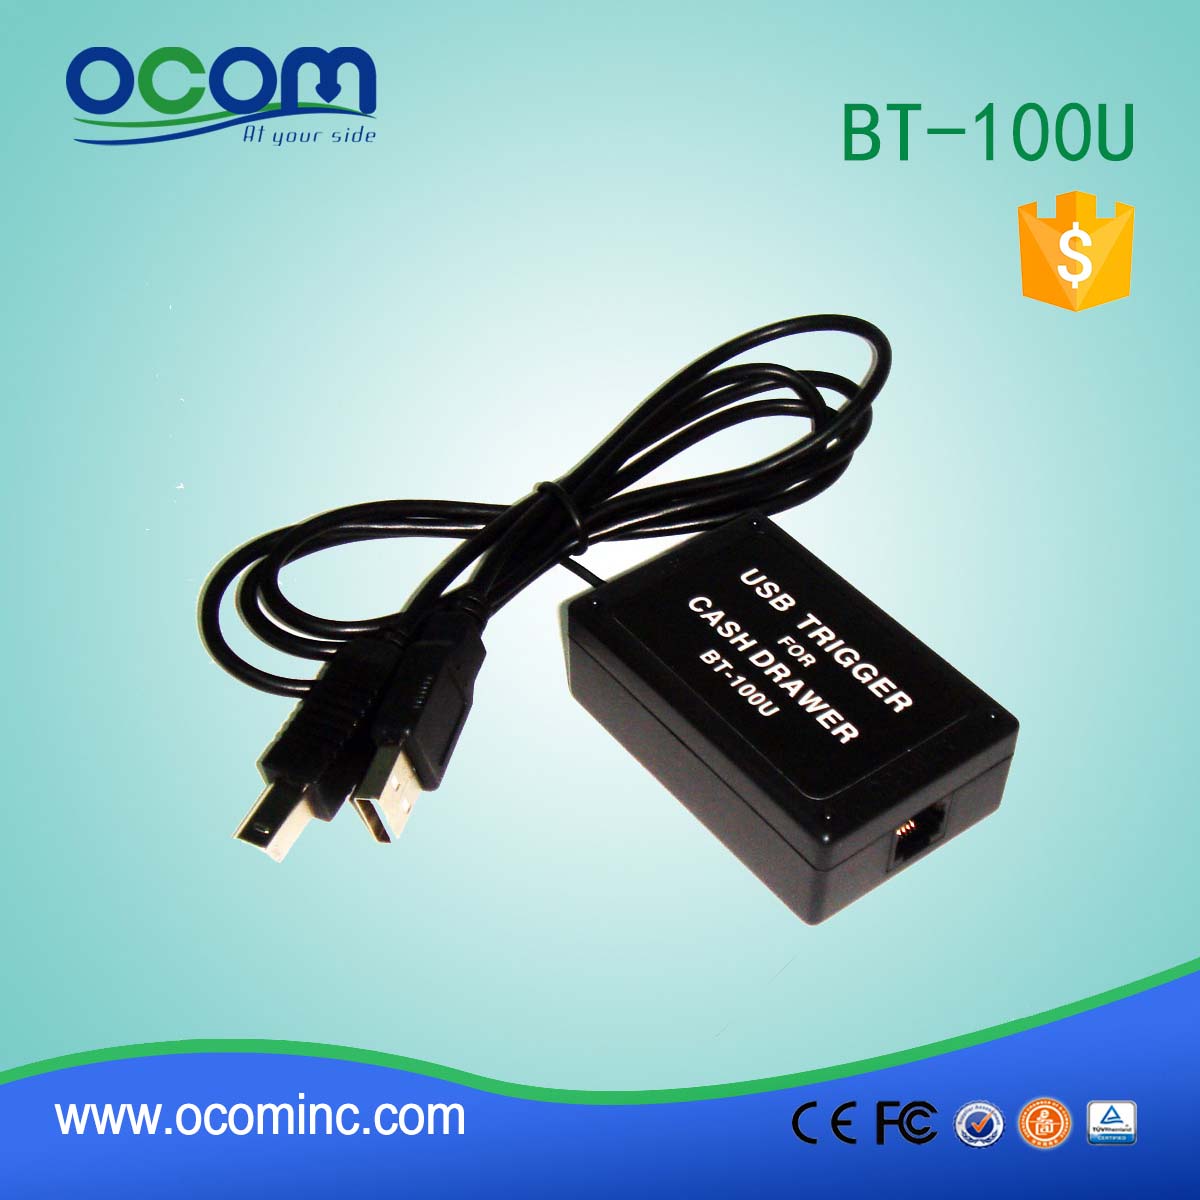 BT-100U USB Trigger for POS Cash Drawer